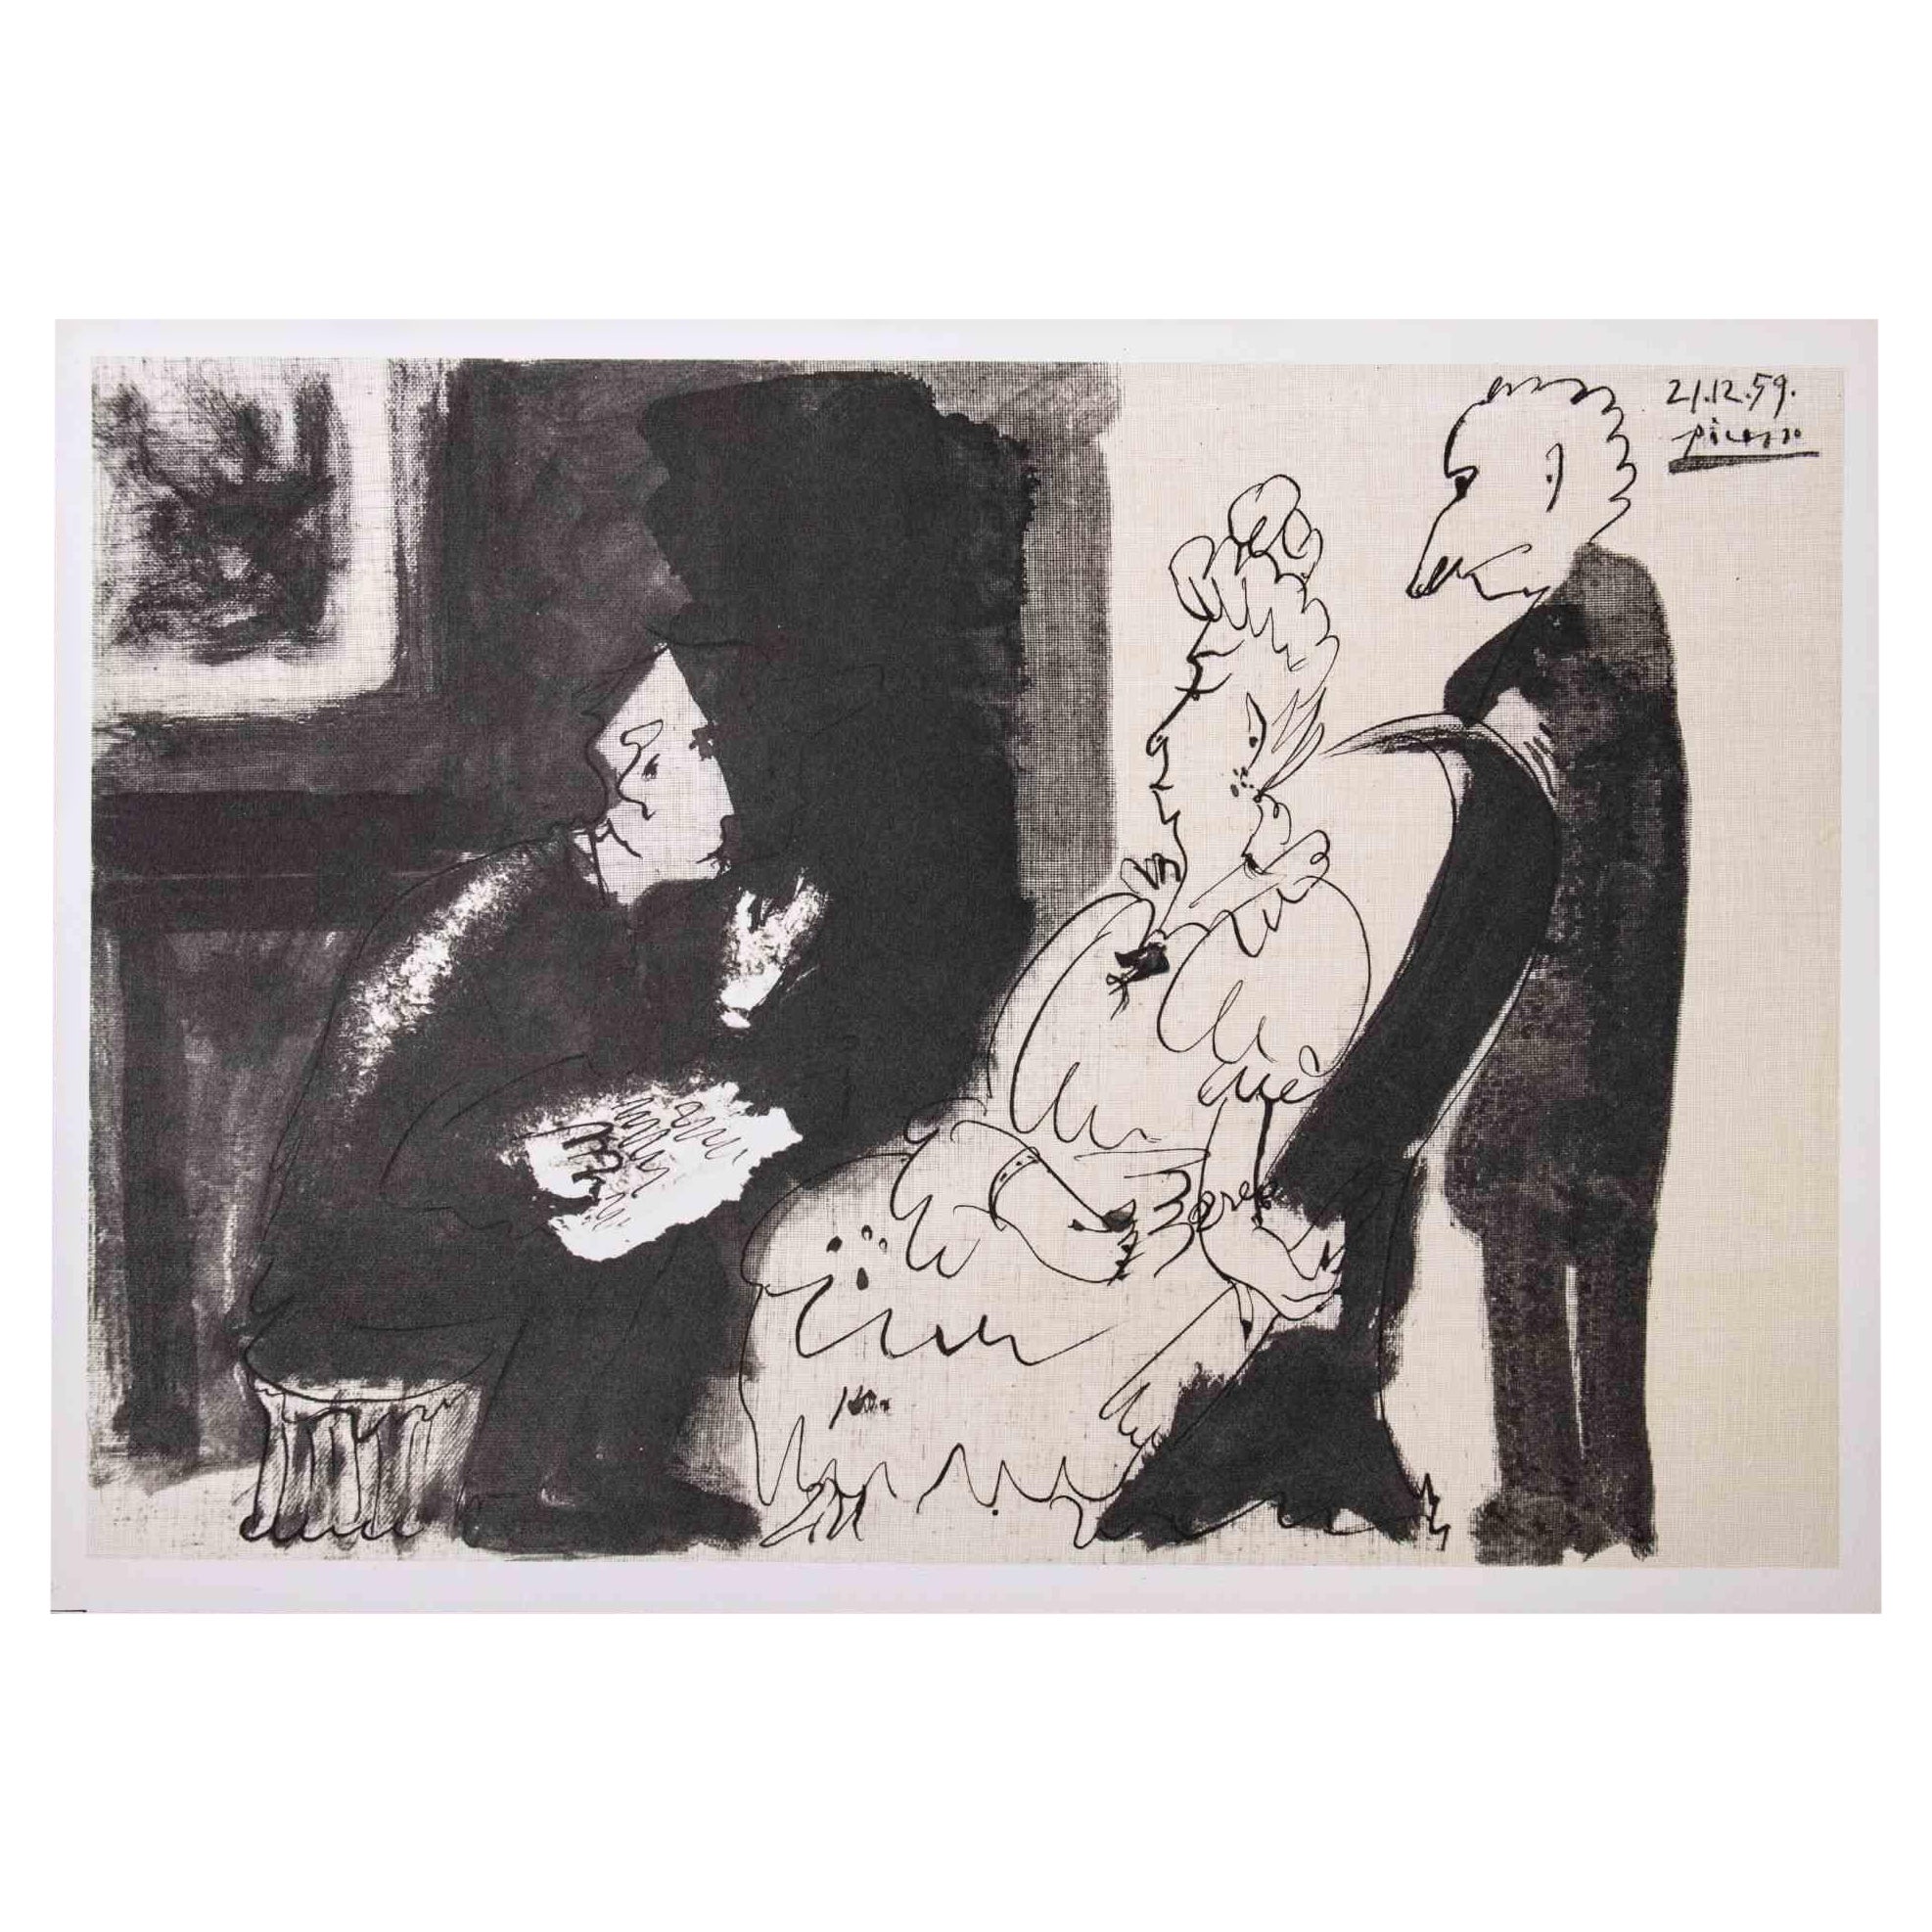 (after) Pablo Picasso Figurative Print - La Lecture - Photolithograph after Pablo Picasso - 1959